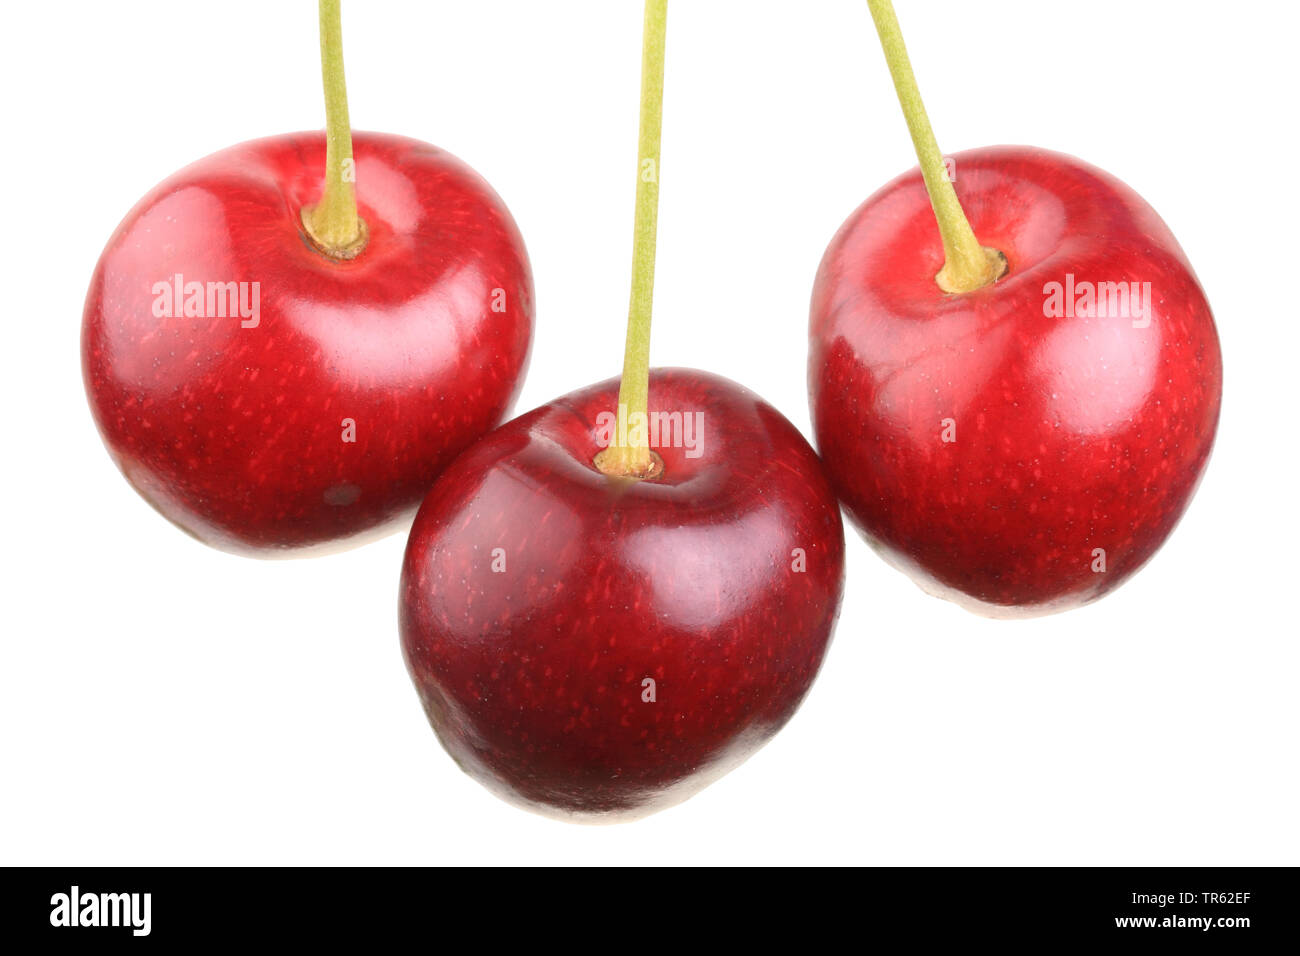 Cherry tree, Sweet cherry (Prunus avium 'Grosse Schwarze Knorpelkirsche', Prunus avium Grosse Schwarze Knorpelkirsche), cherries of cultivar Grosse Schwarze Knorpelkirsche, cutout Stock Photo